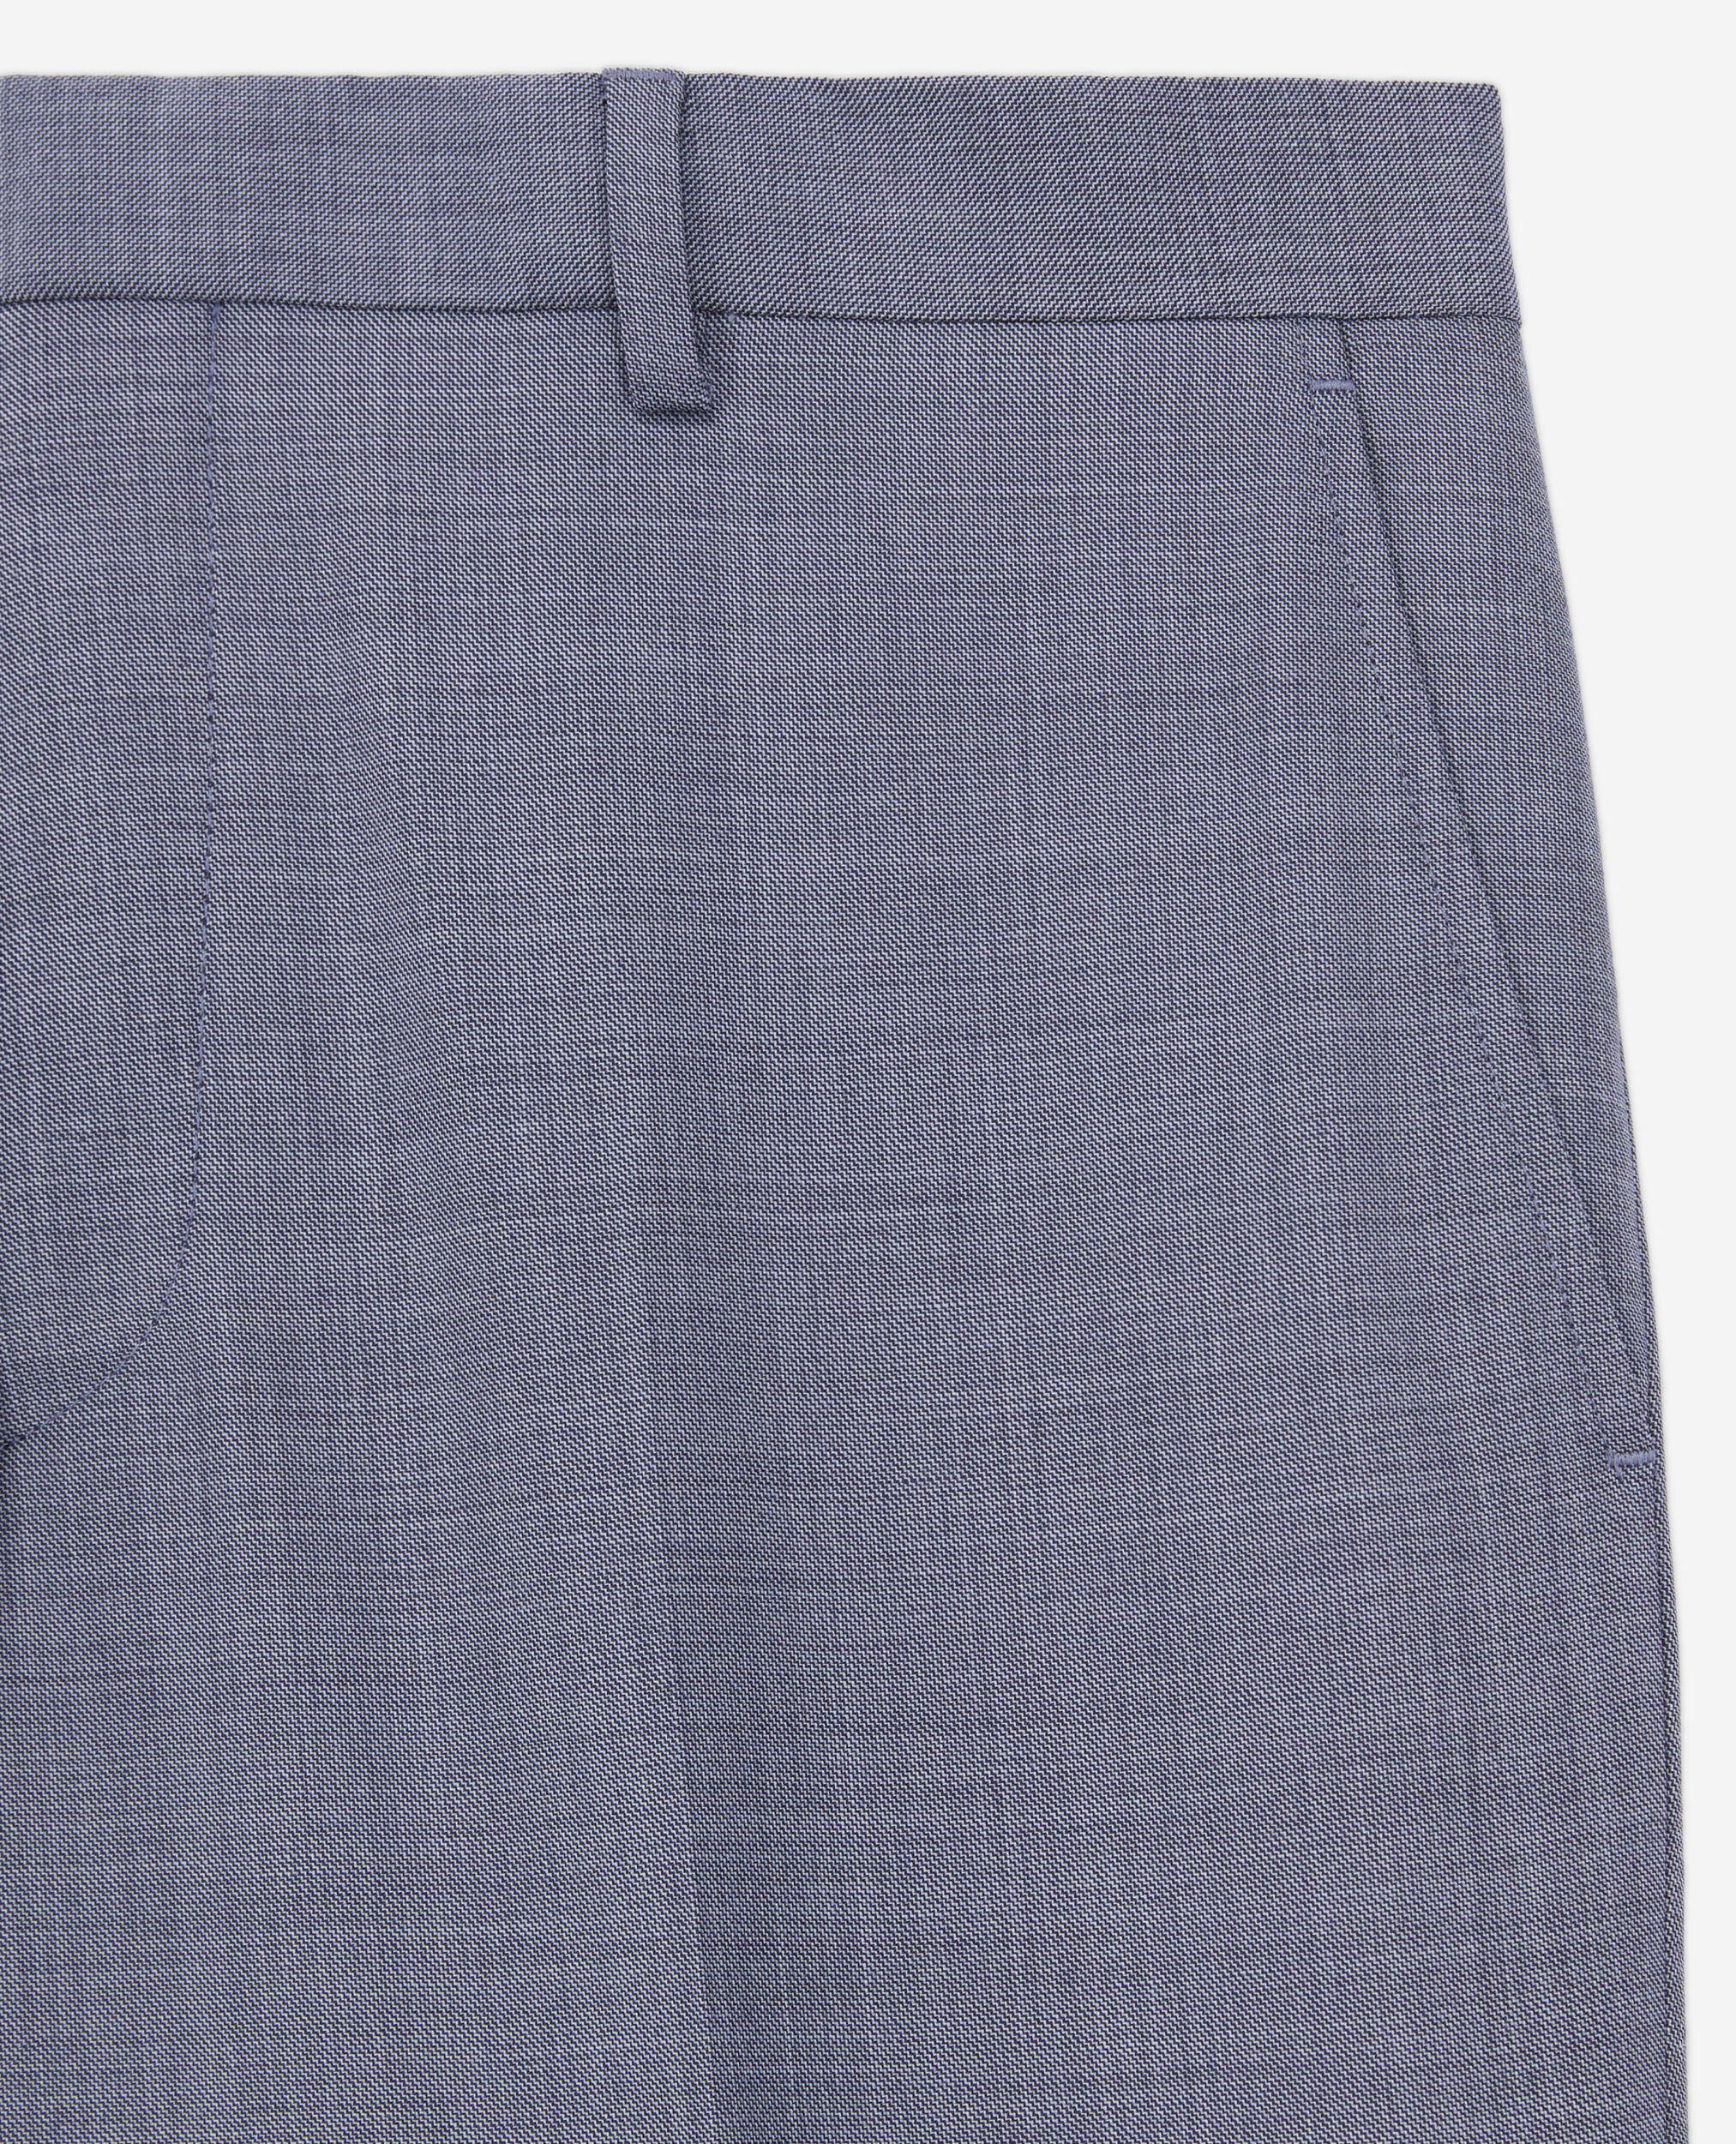 Pantalon de costume en laine à carreaux gris et bleus, LIGHT BLUE, hi-res image number null